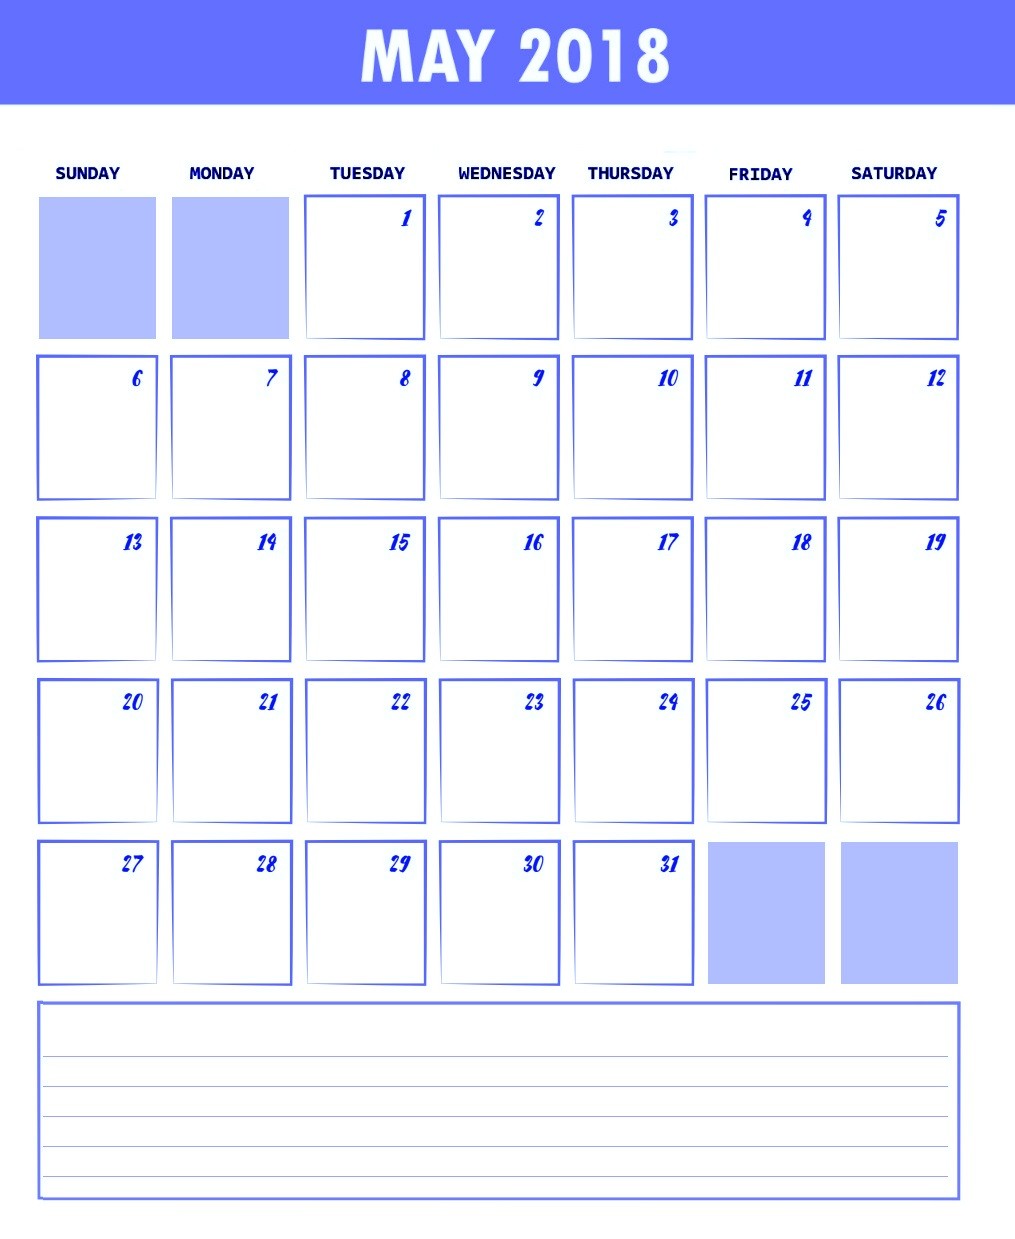 Waterproof Printable Calendar Free May 2018 Waterproof Calendars